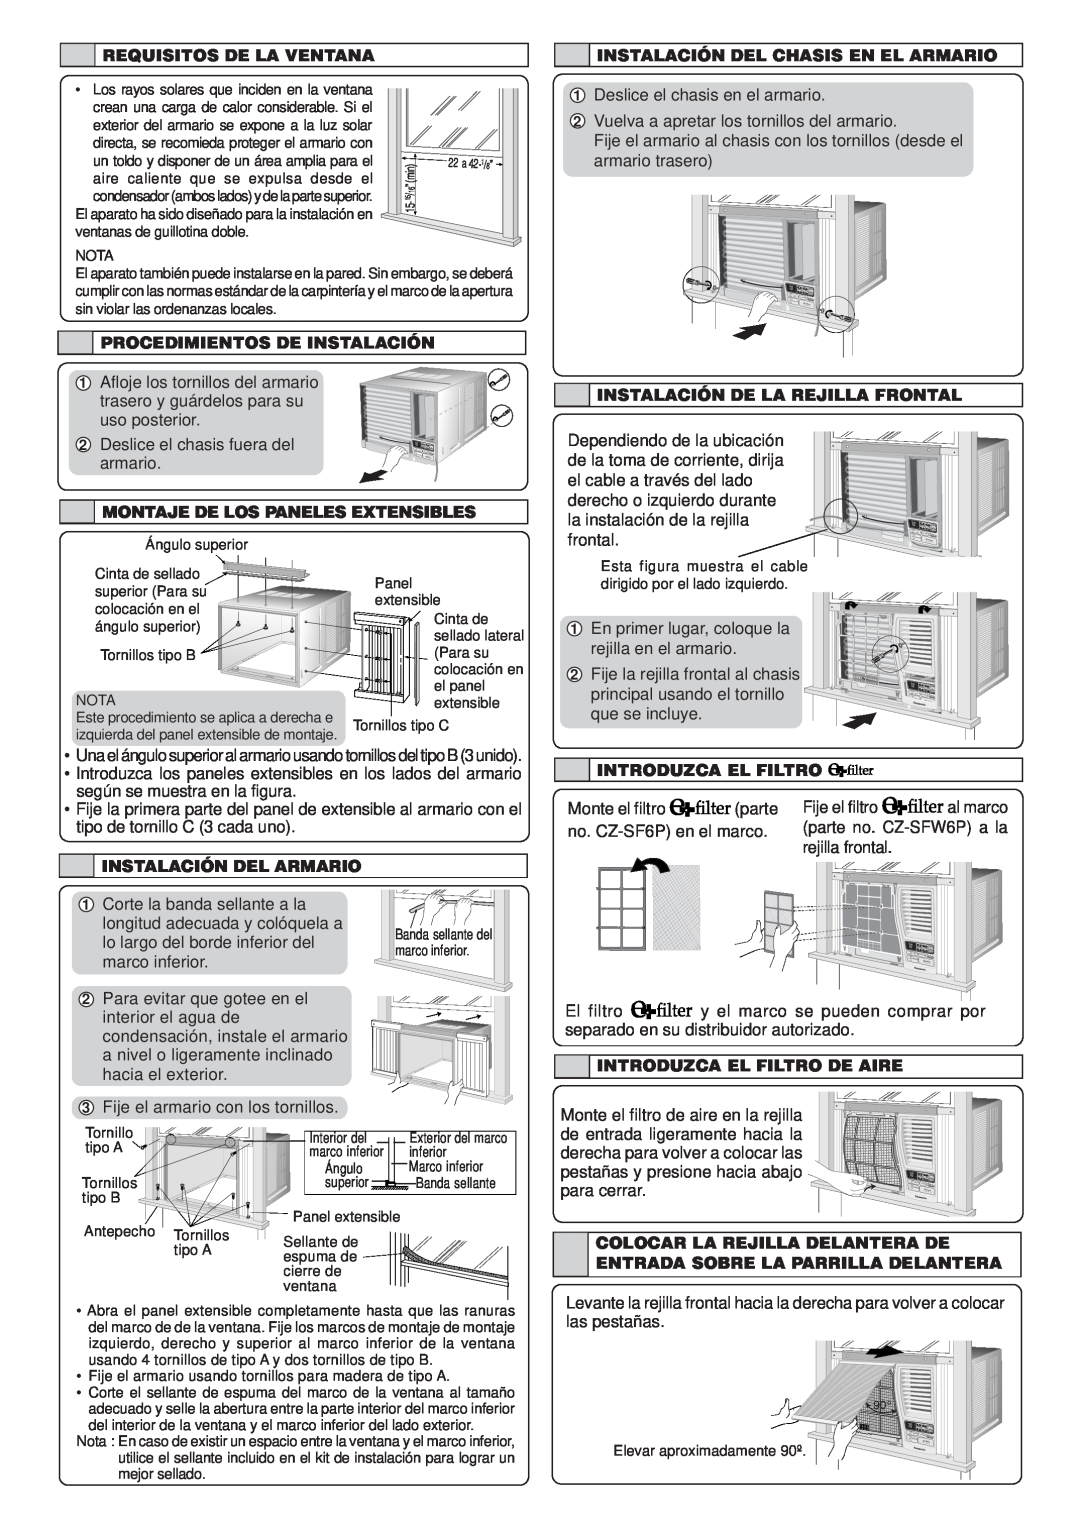 Panasonic CW-XC123VU manual Requisitos De La Ventana, Instalación Del Chasis En El Armario, Procedimientos De Instalación 